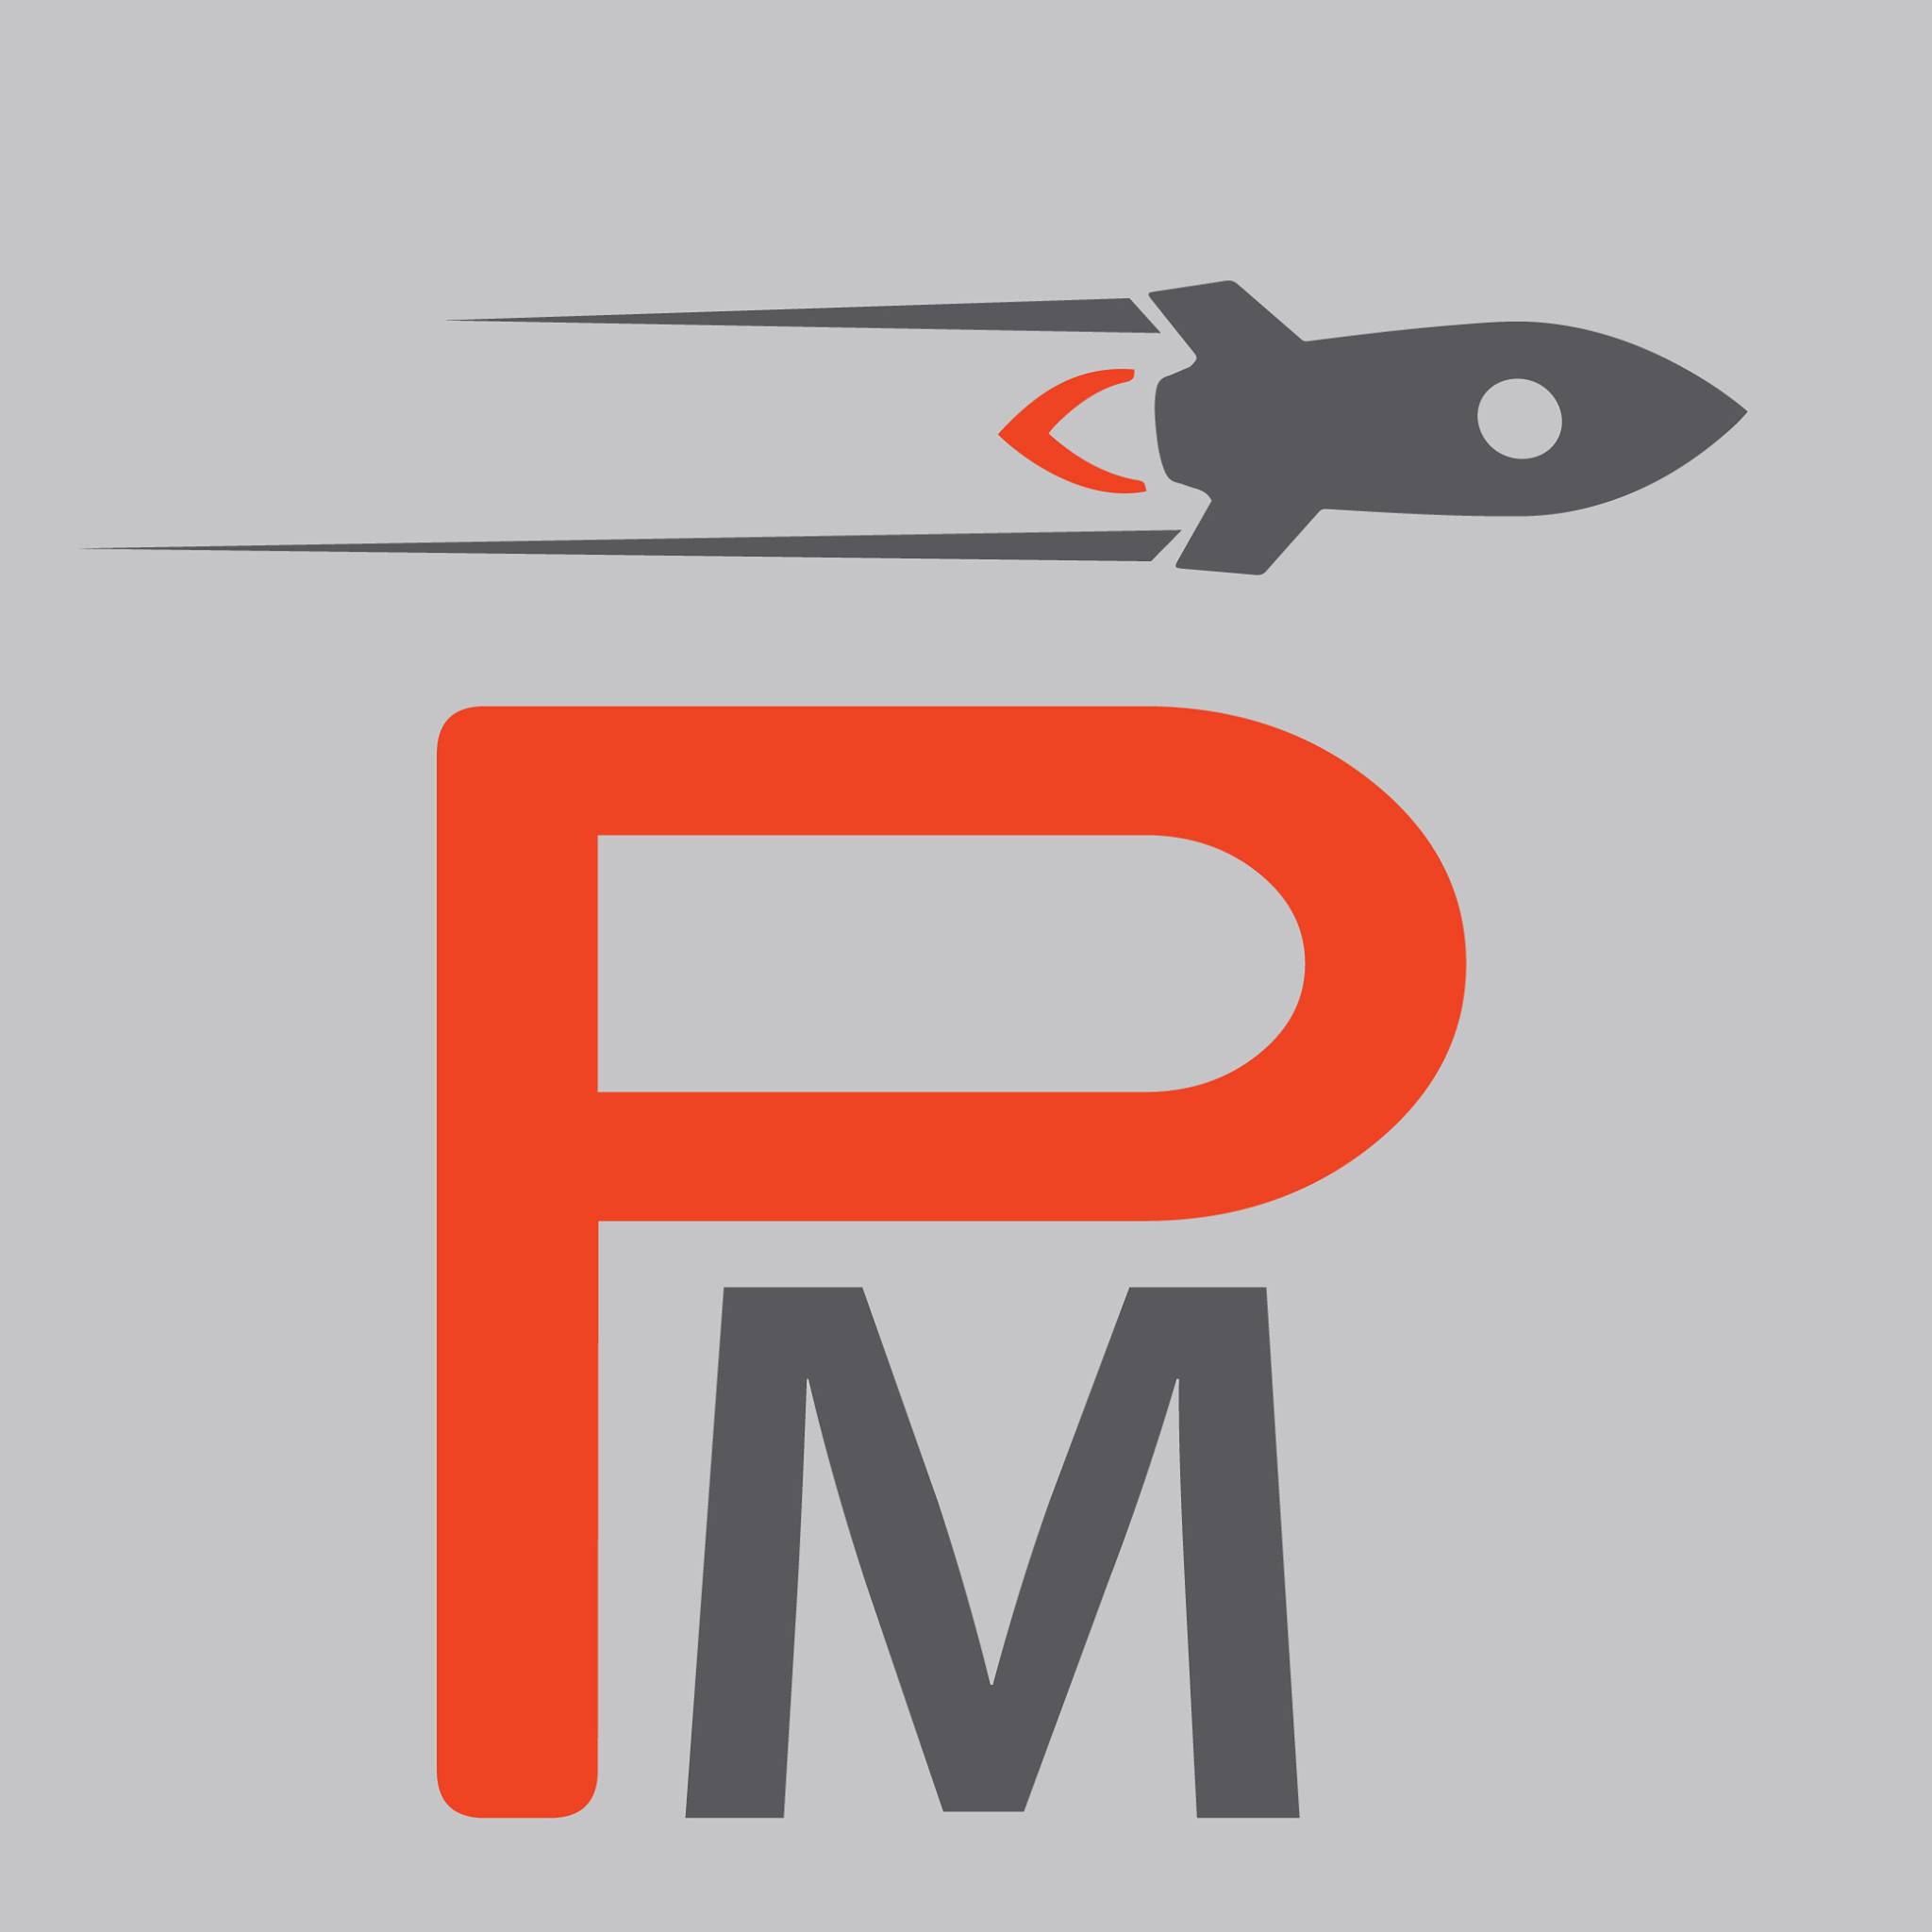 Company logo of Propellant Media